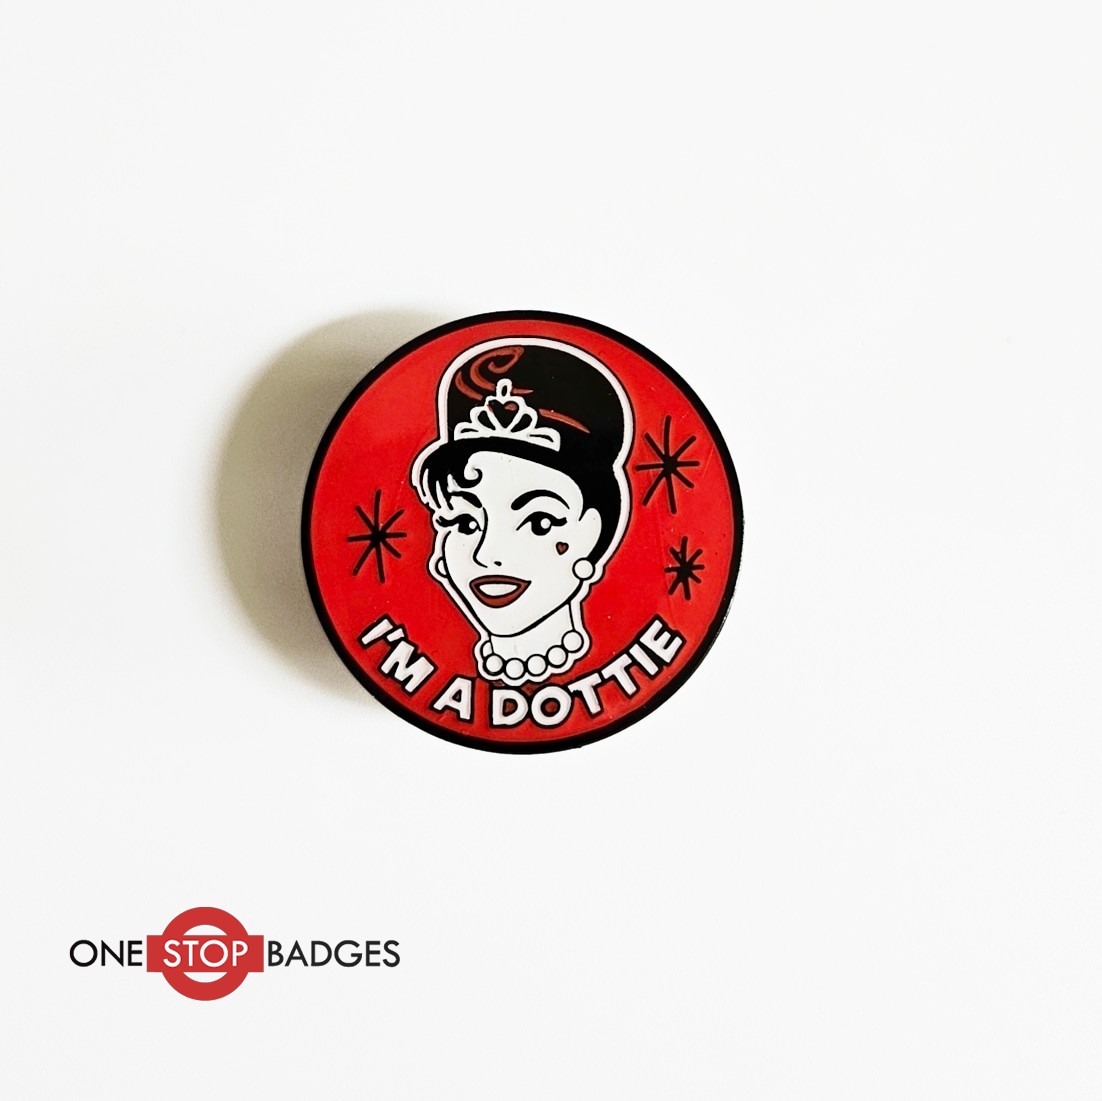 I'm a Dottie'  Soft Enamel Badges 

#pinbadges #pins #badges #enamelpins #enamelpinbadges #enamelbadges #pindesign #custompins #custombadges #softenamelpins #personalisedpins #dottie